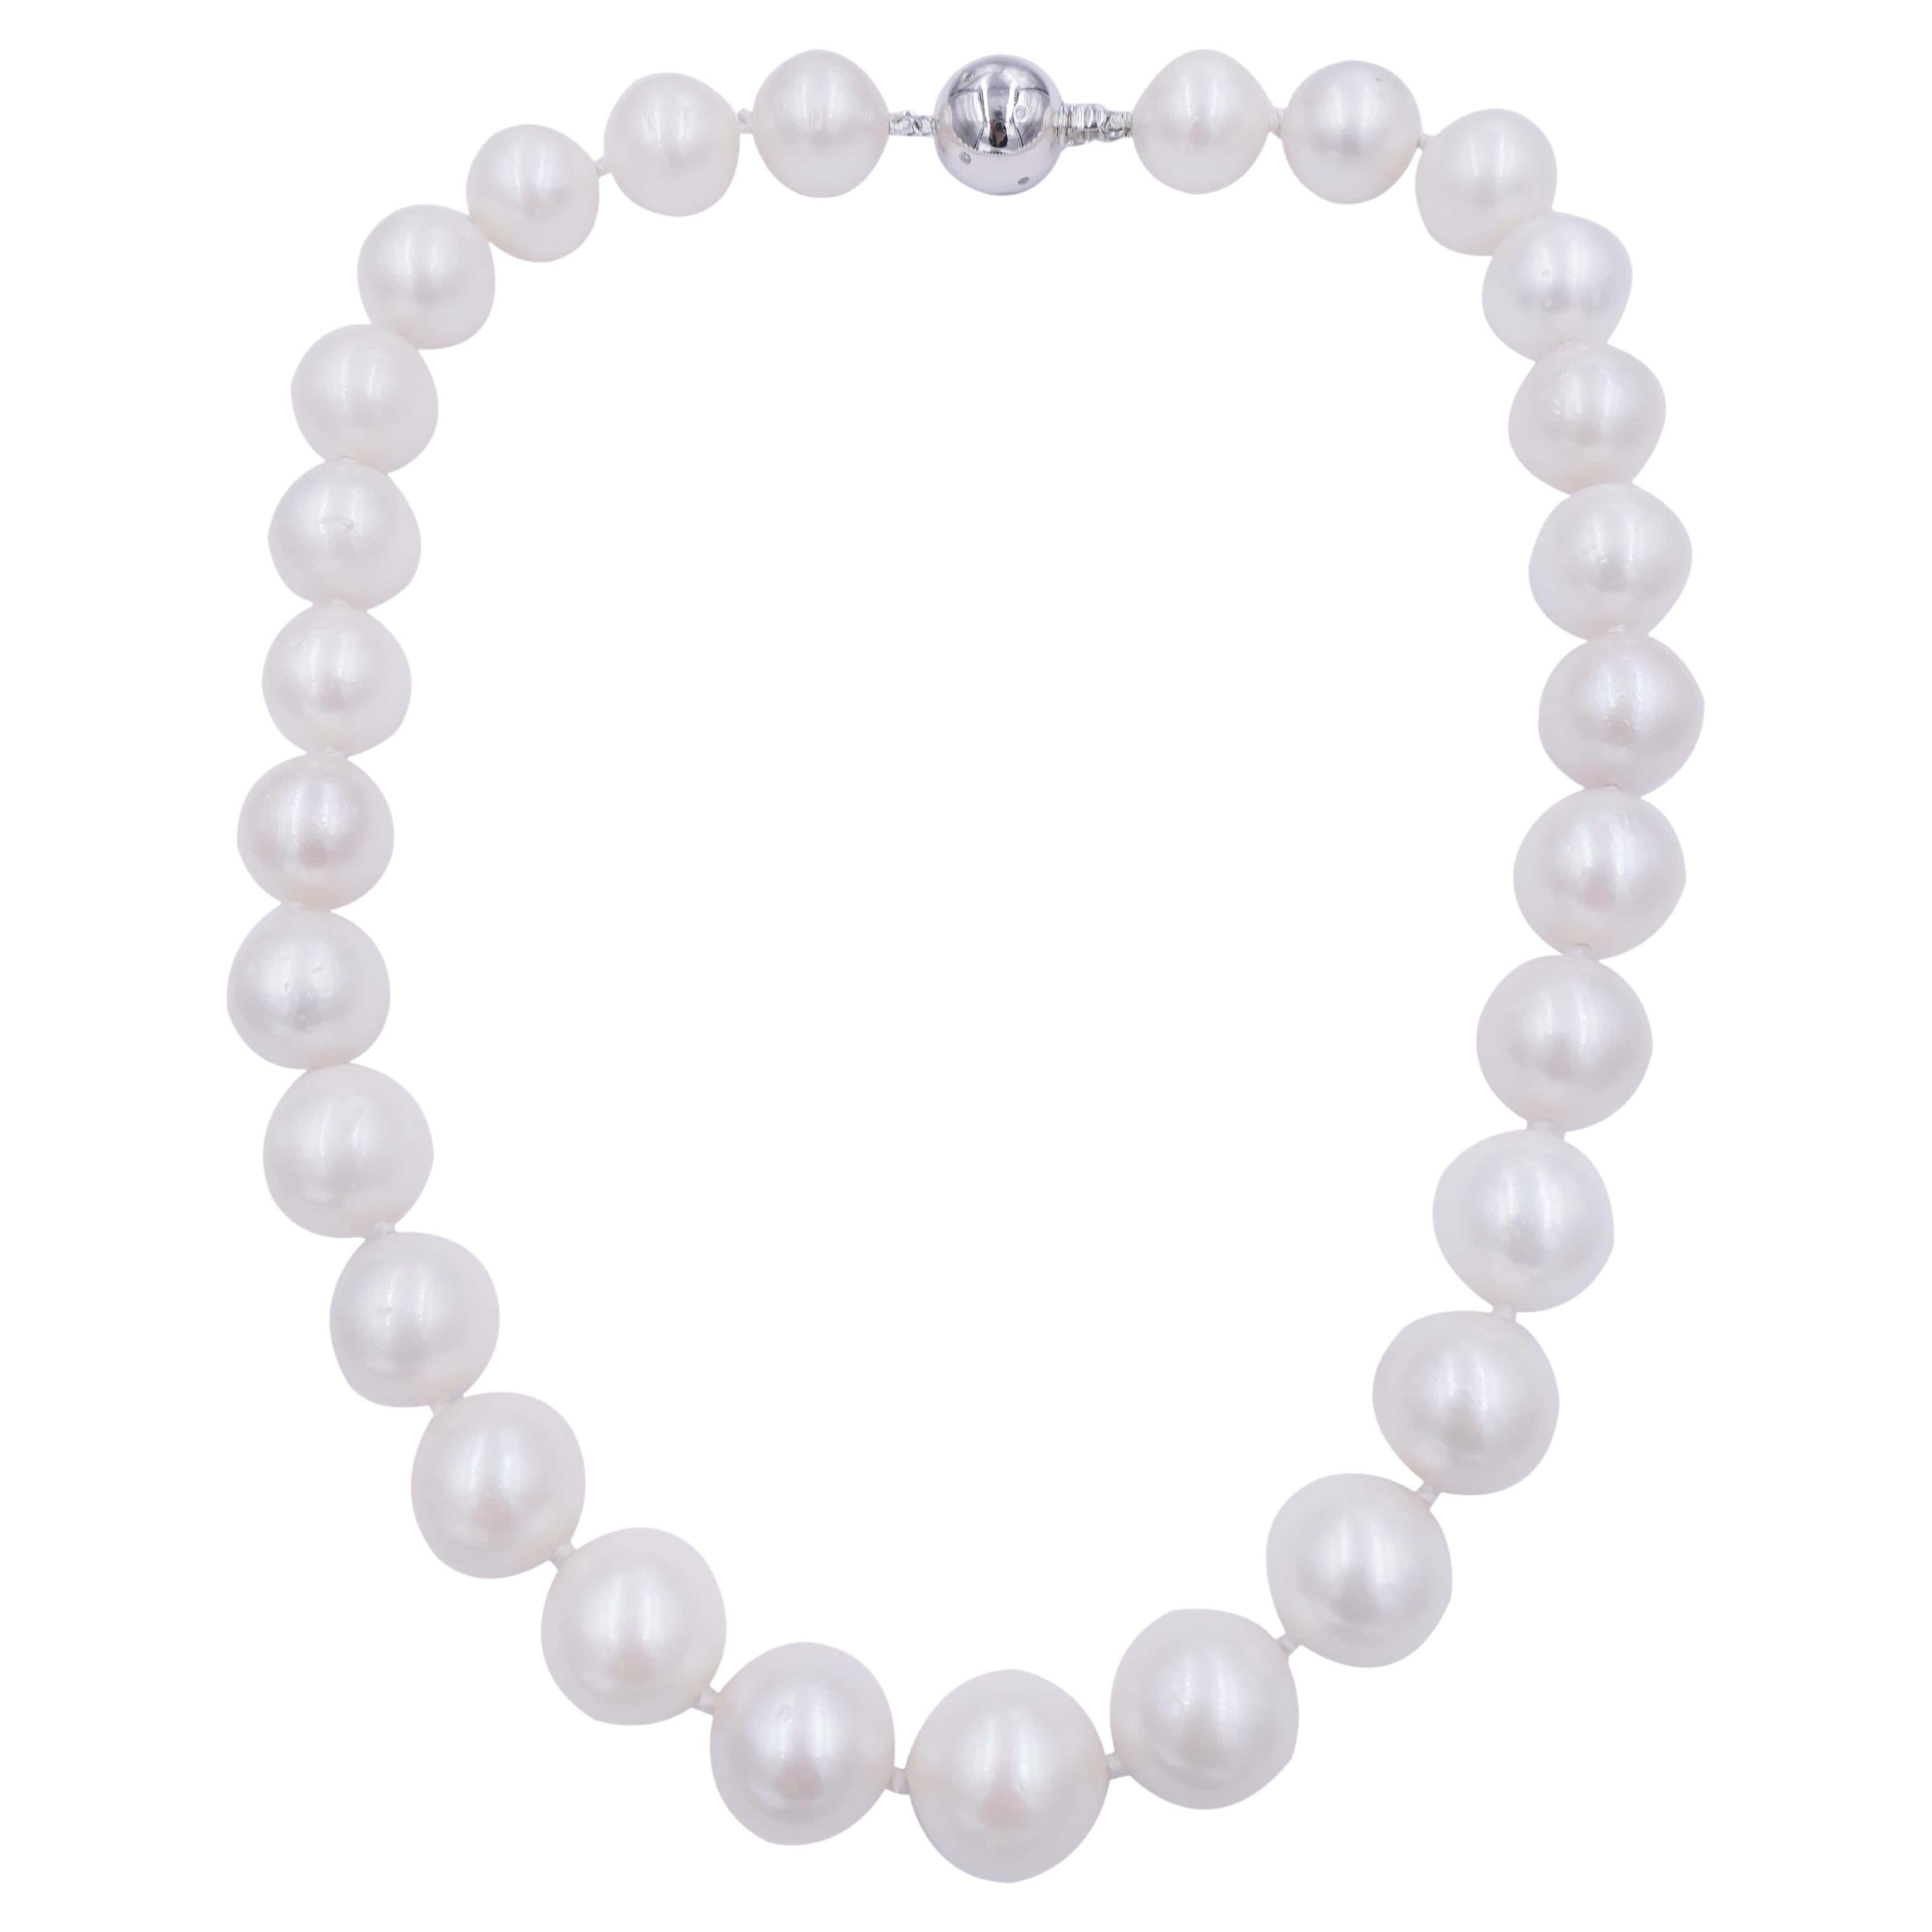 Collier classique de perles blanches rondes des mers du Sud avec perles courtes en or blanc 18 carats et diamants